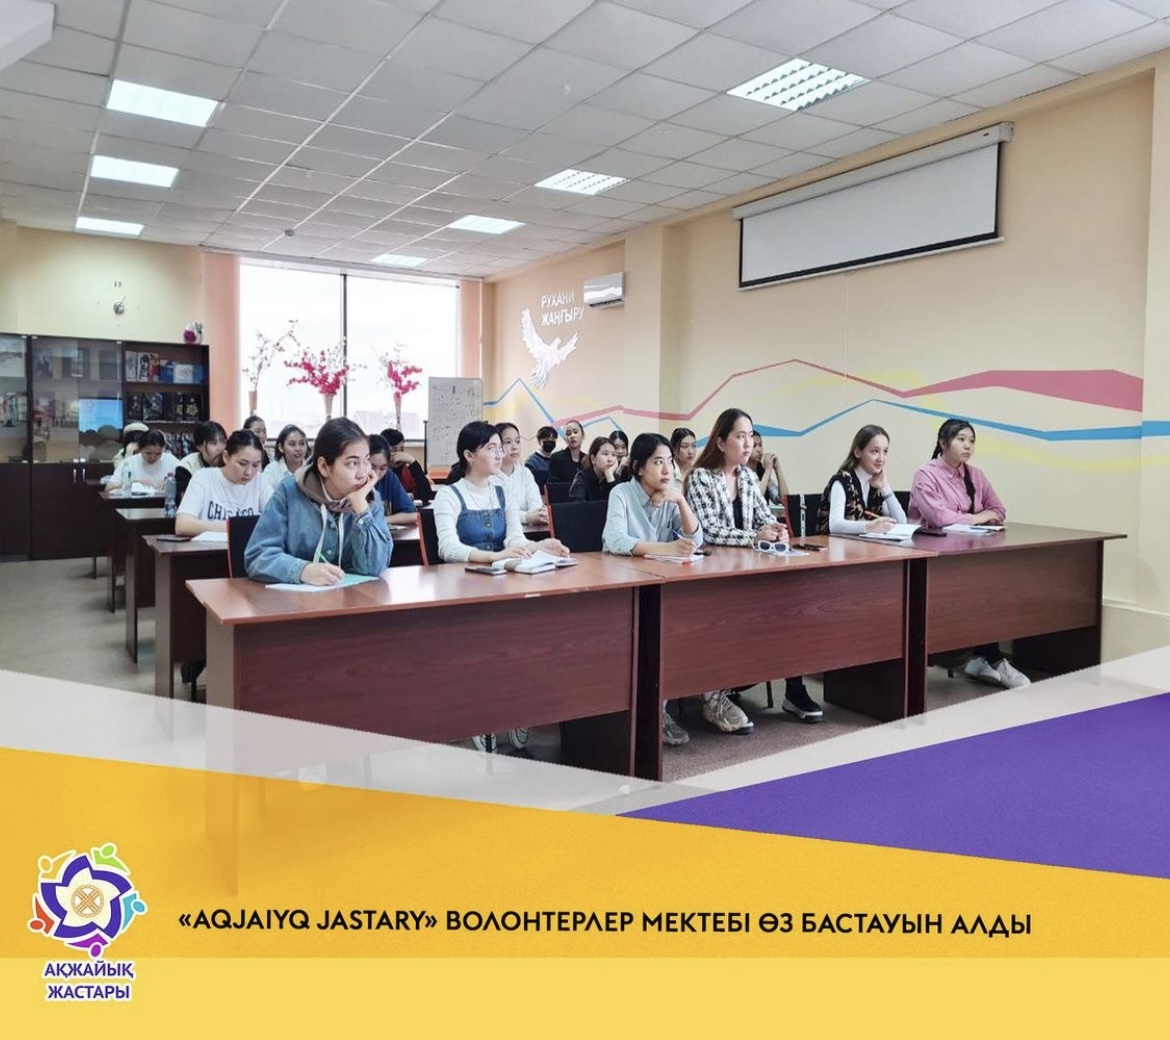 В марте 2022 года при Западно-Казахстанском региональном ресурсном центре для молодежи была создана школа волонтеров «АКЖАЙЫK ЖАСТАРЫ».